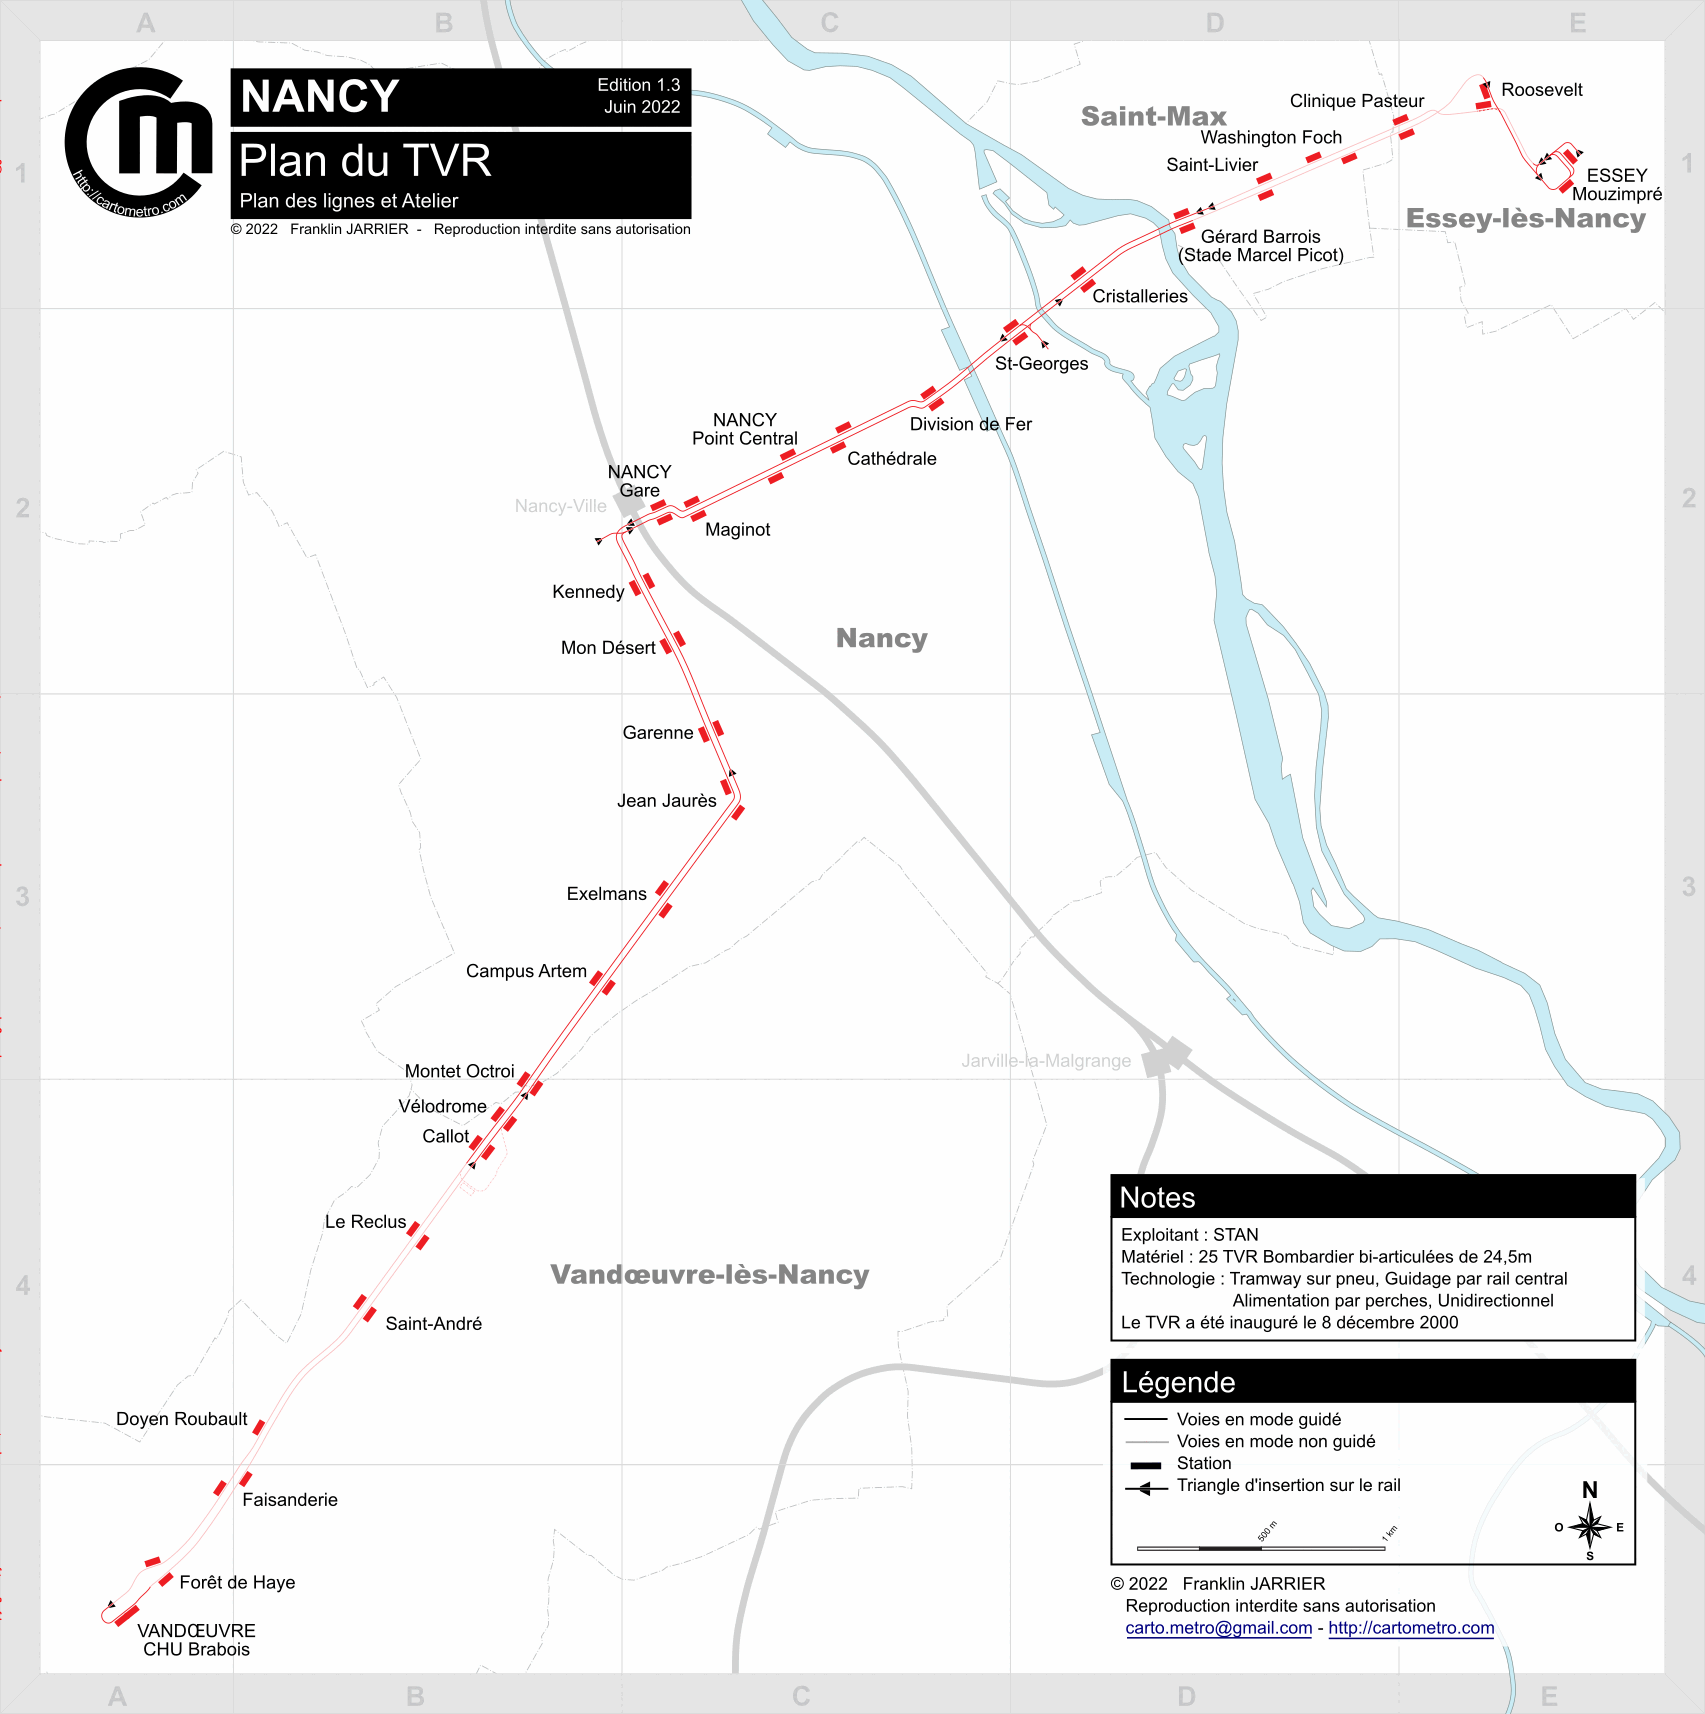 Detailled Tracks map - Paris, Lyon, Lausanne, Milan, Turin tracks maps